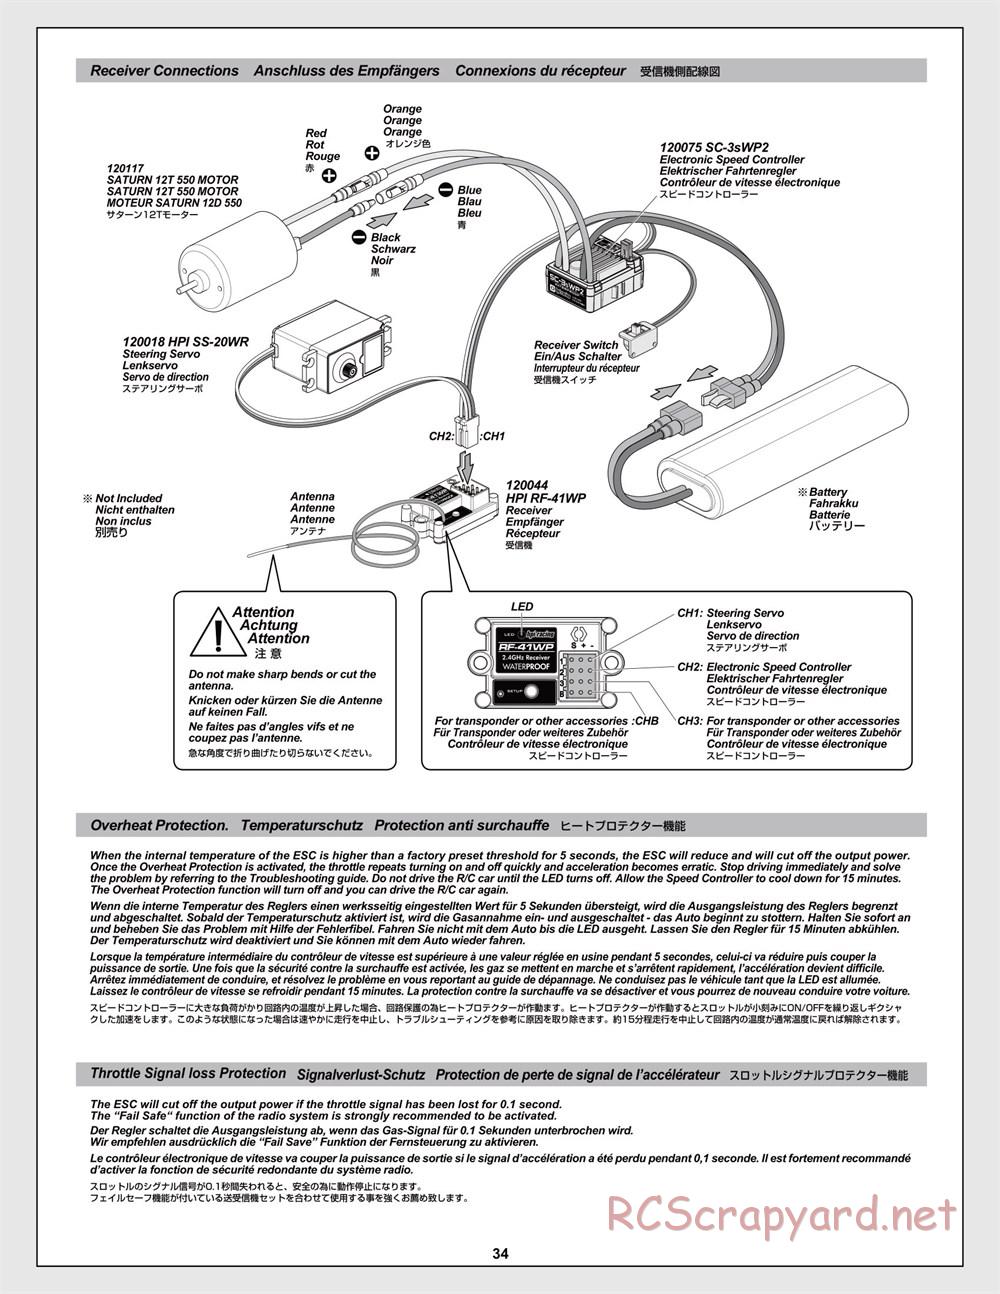 HPI - Jumpshot MT V2 - Manual - Page 34